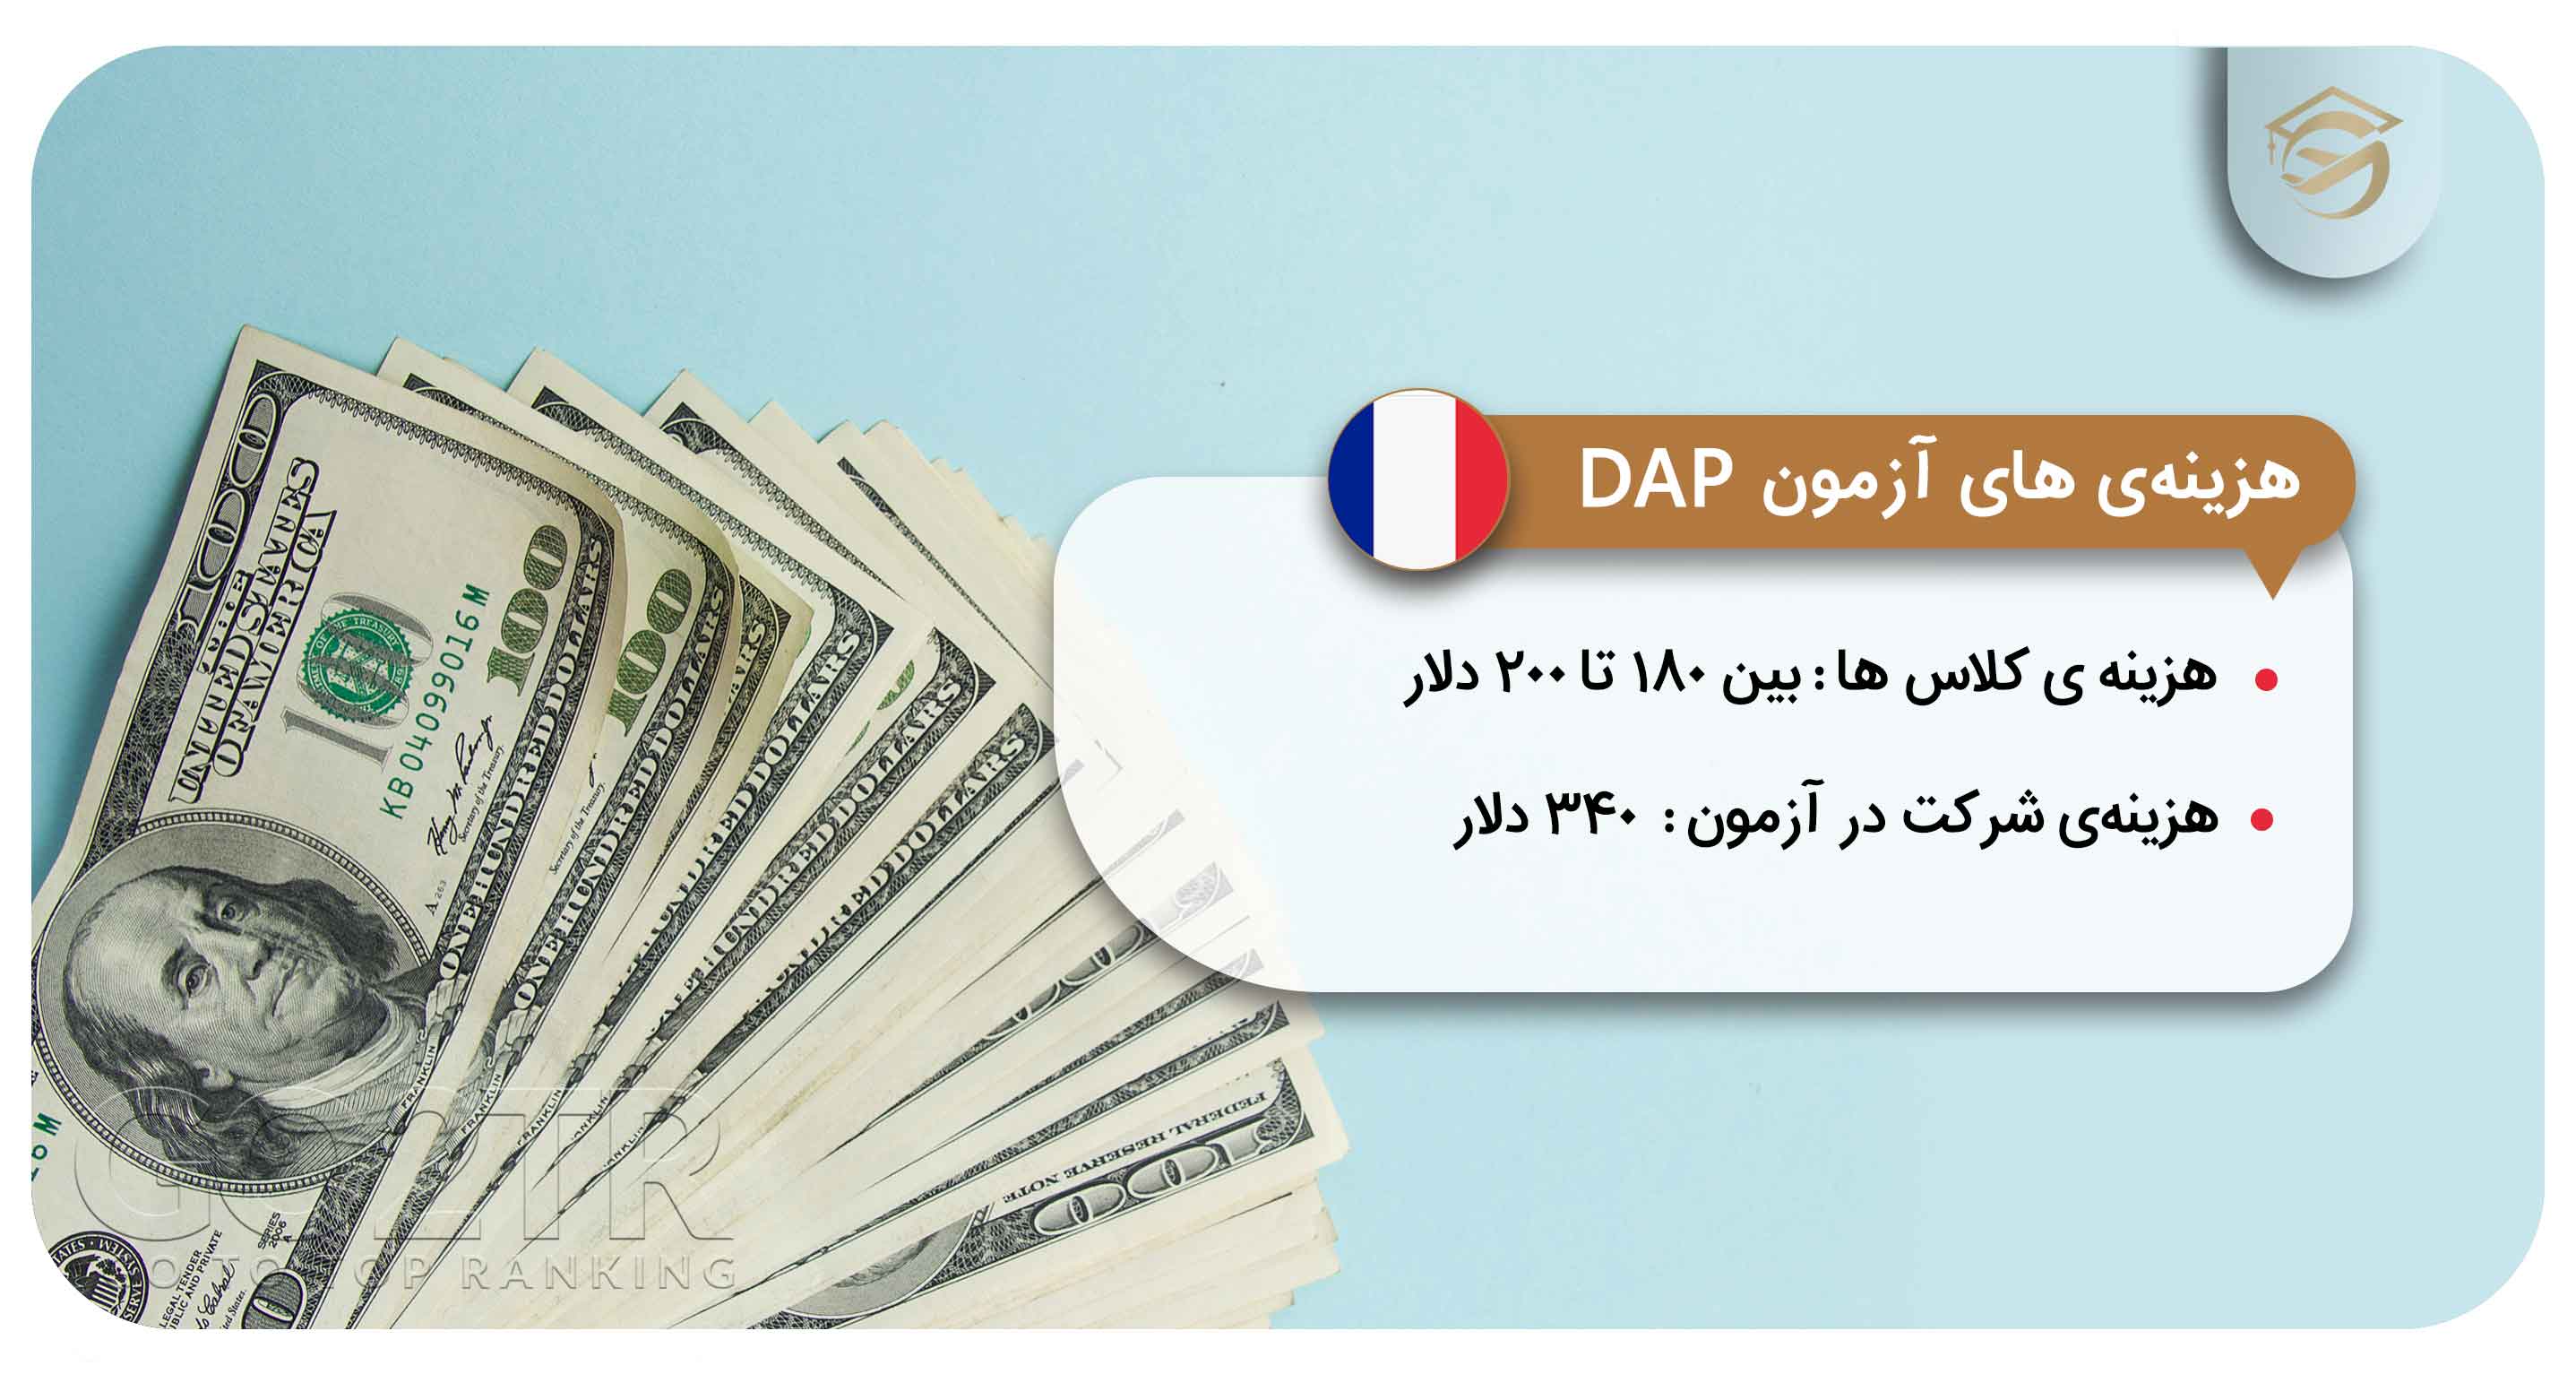 هزینه شرکت در آزمون DAP